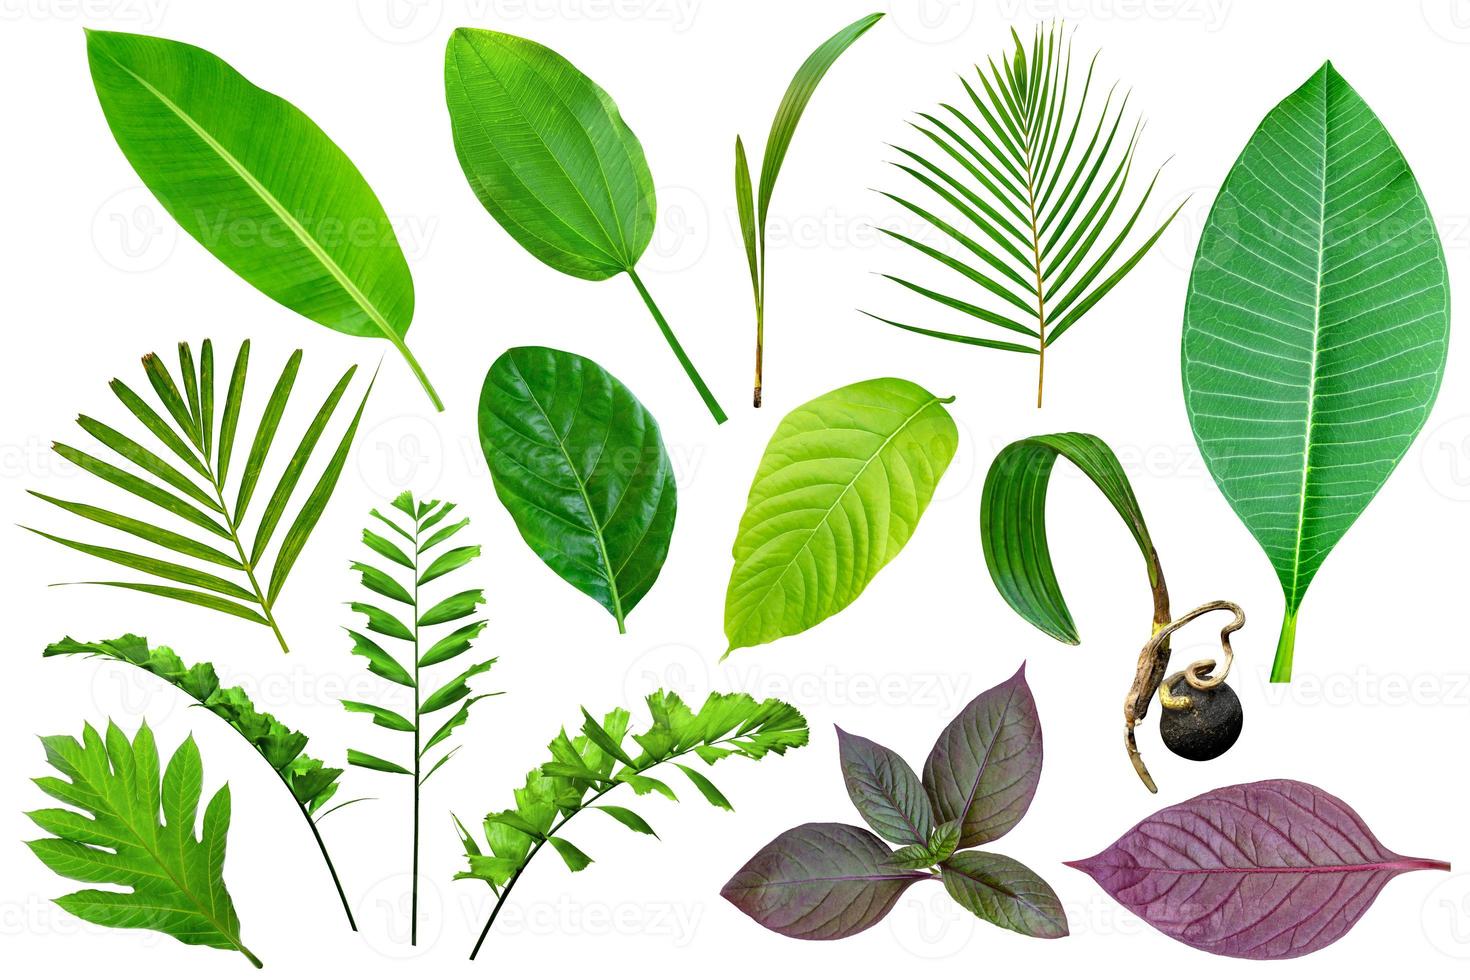 coleção de vários padrões de folhas verdes para o conceito de natureza, conjunto de folhas tropicais isoladas em fundo branco foto